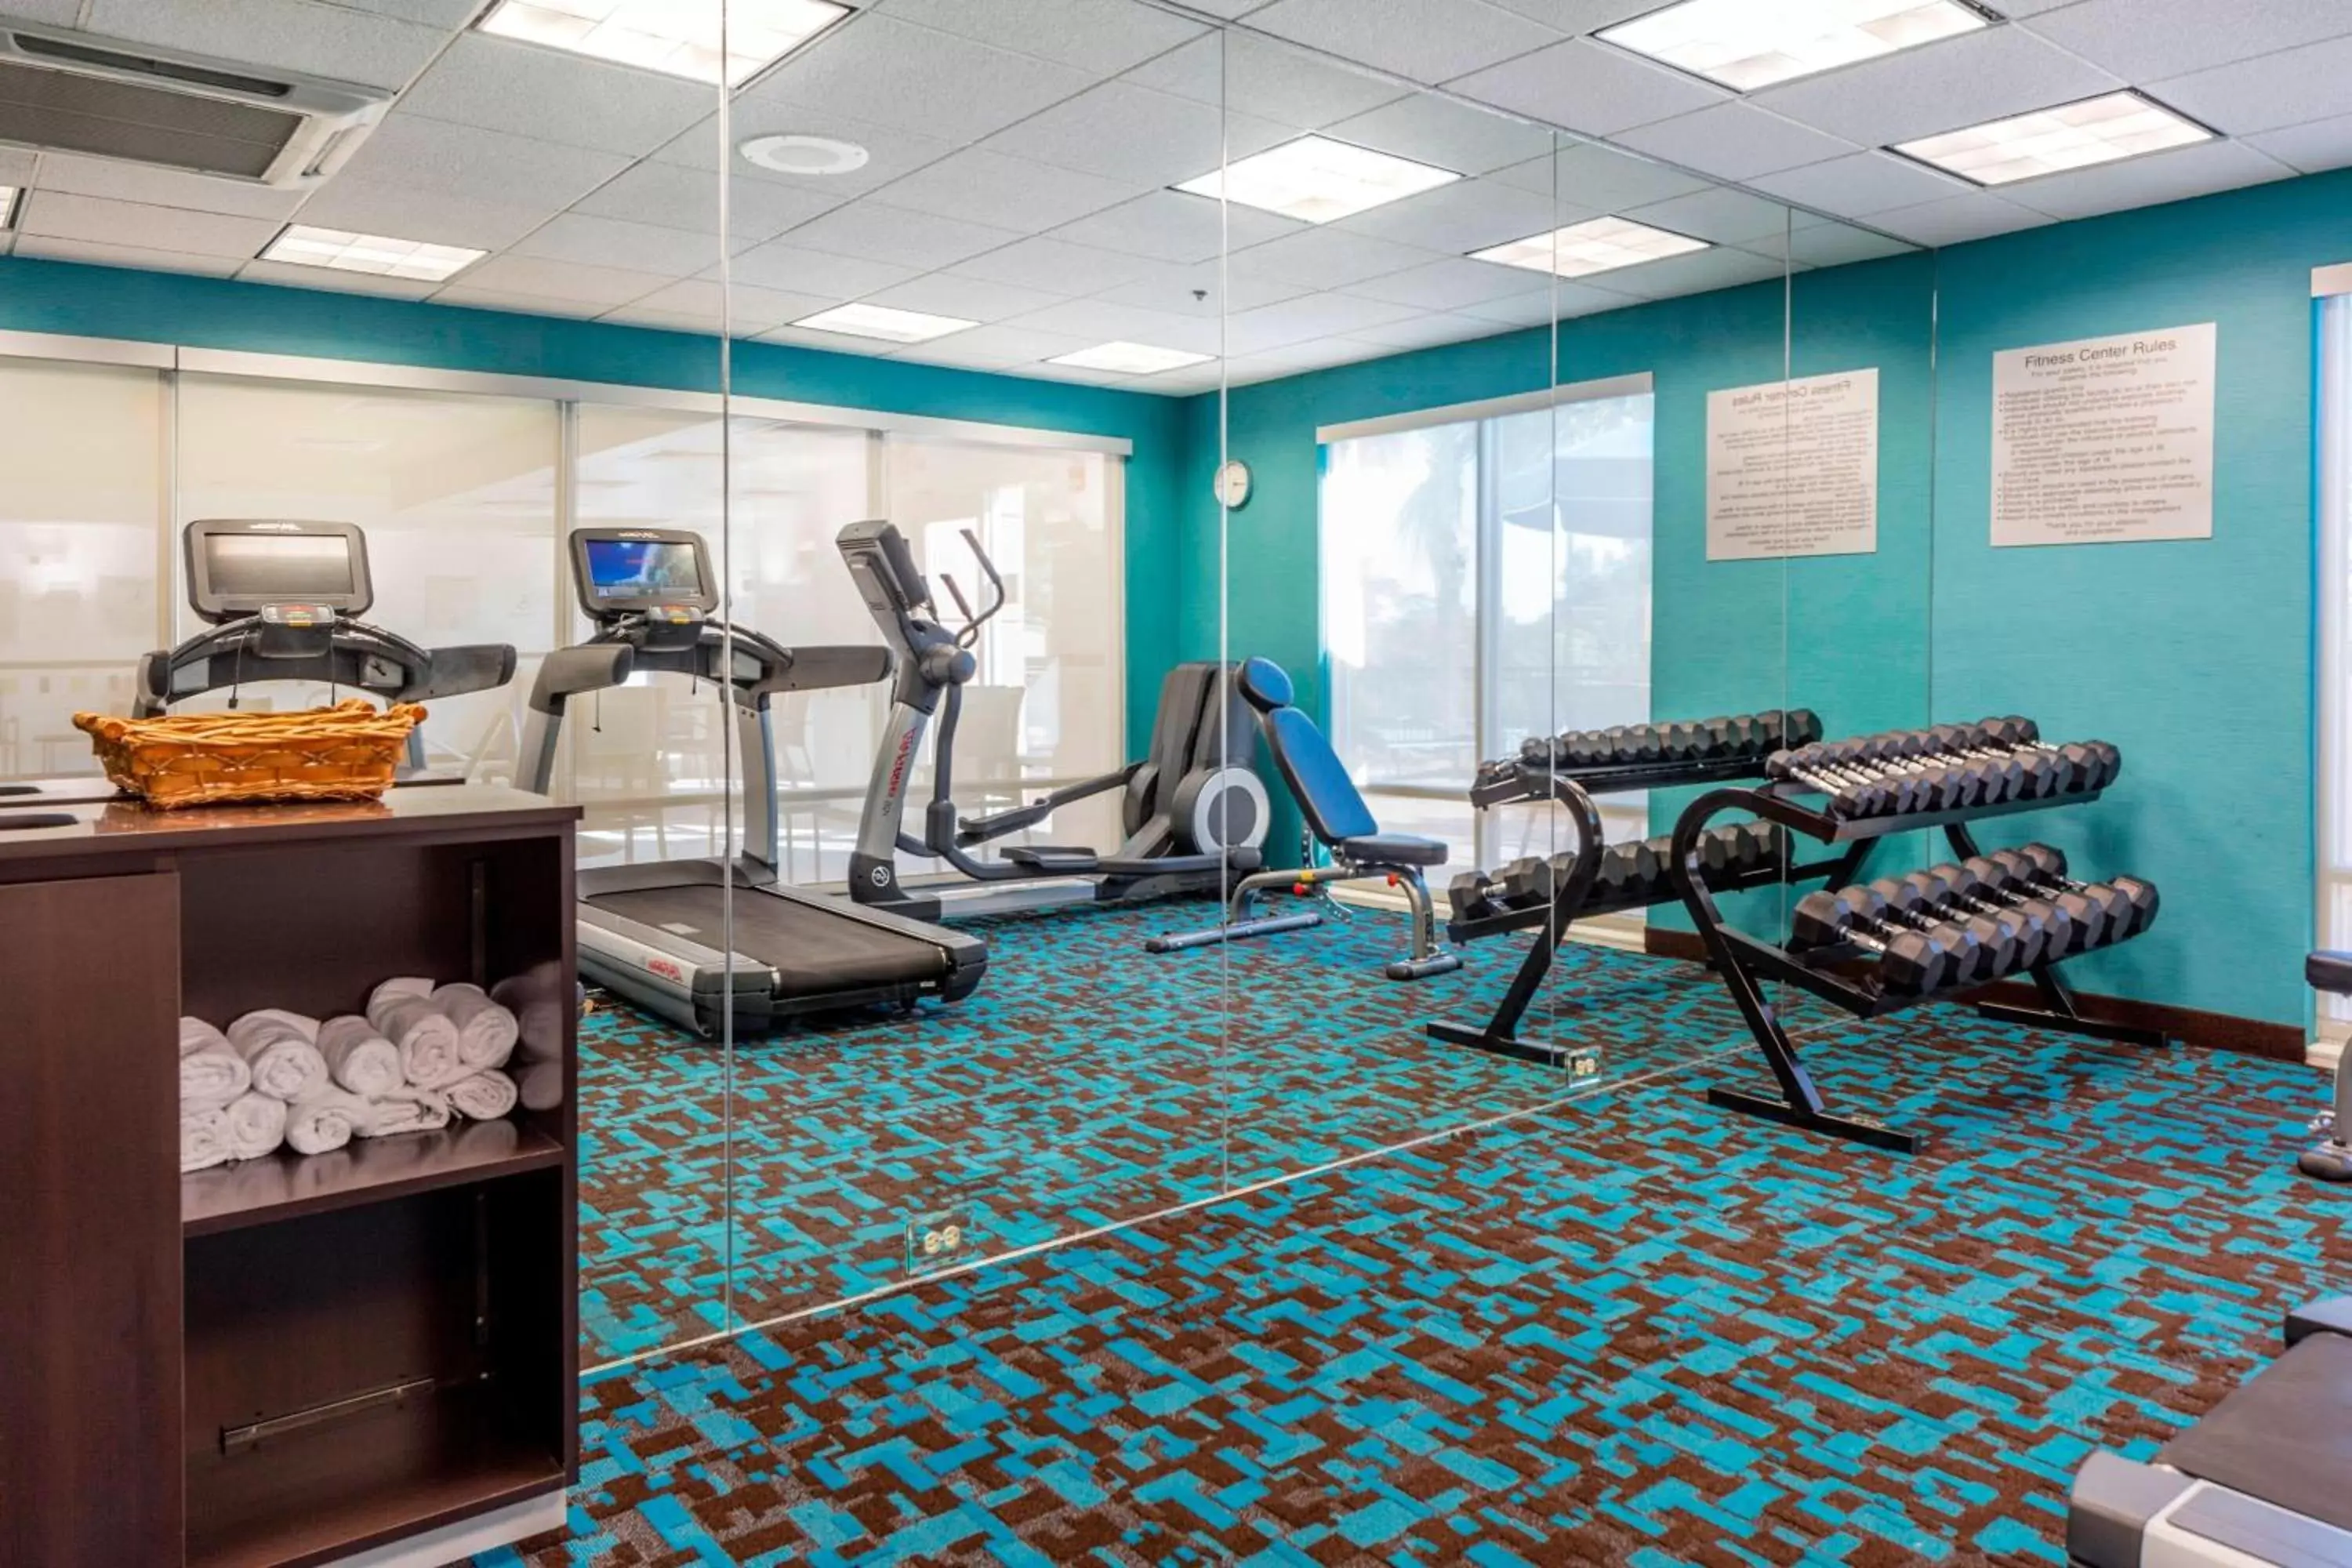 Fitness centre/facilities, Fitness Center/Facilities in Fairfield Inn & Suites Auburn Opelika